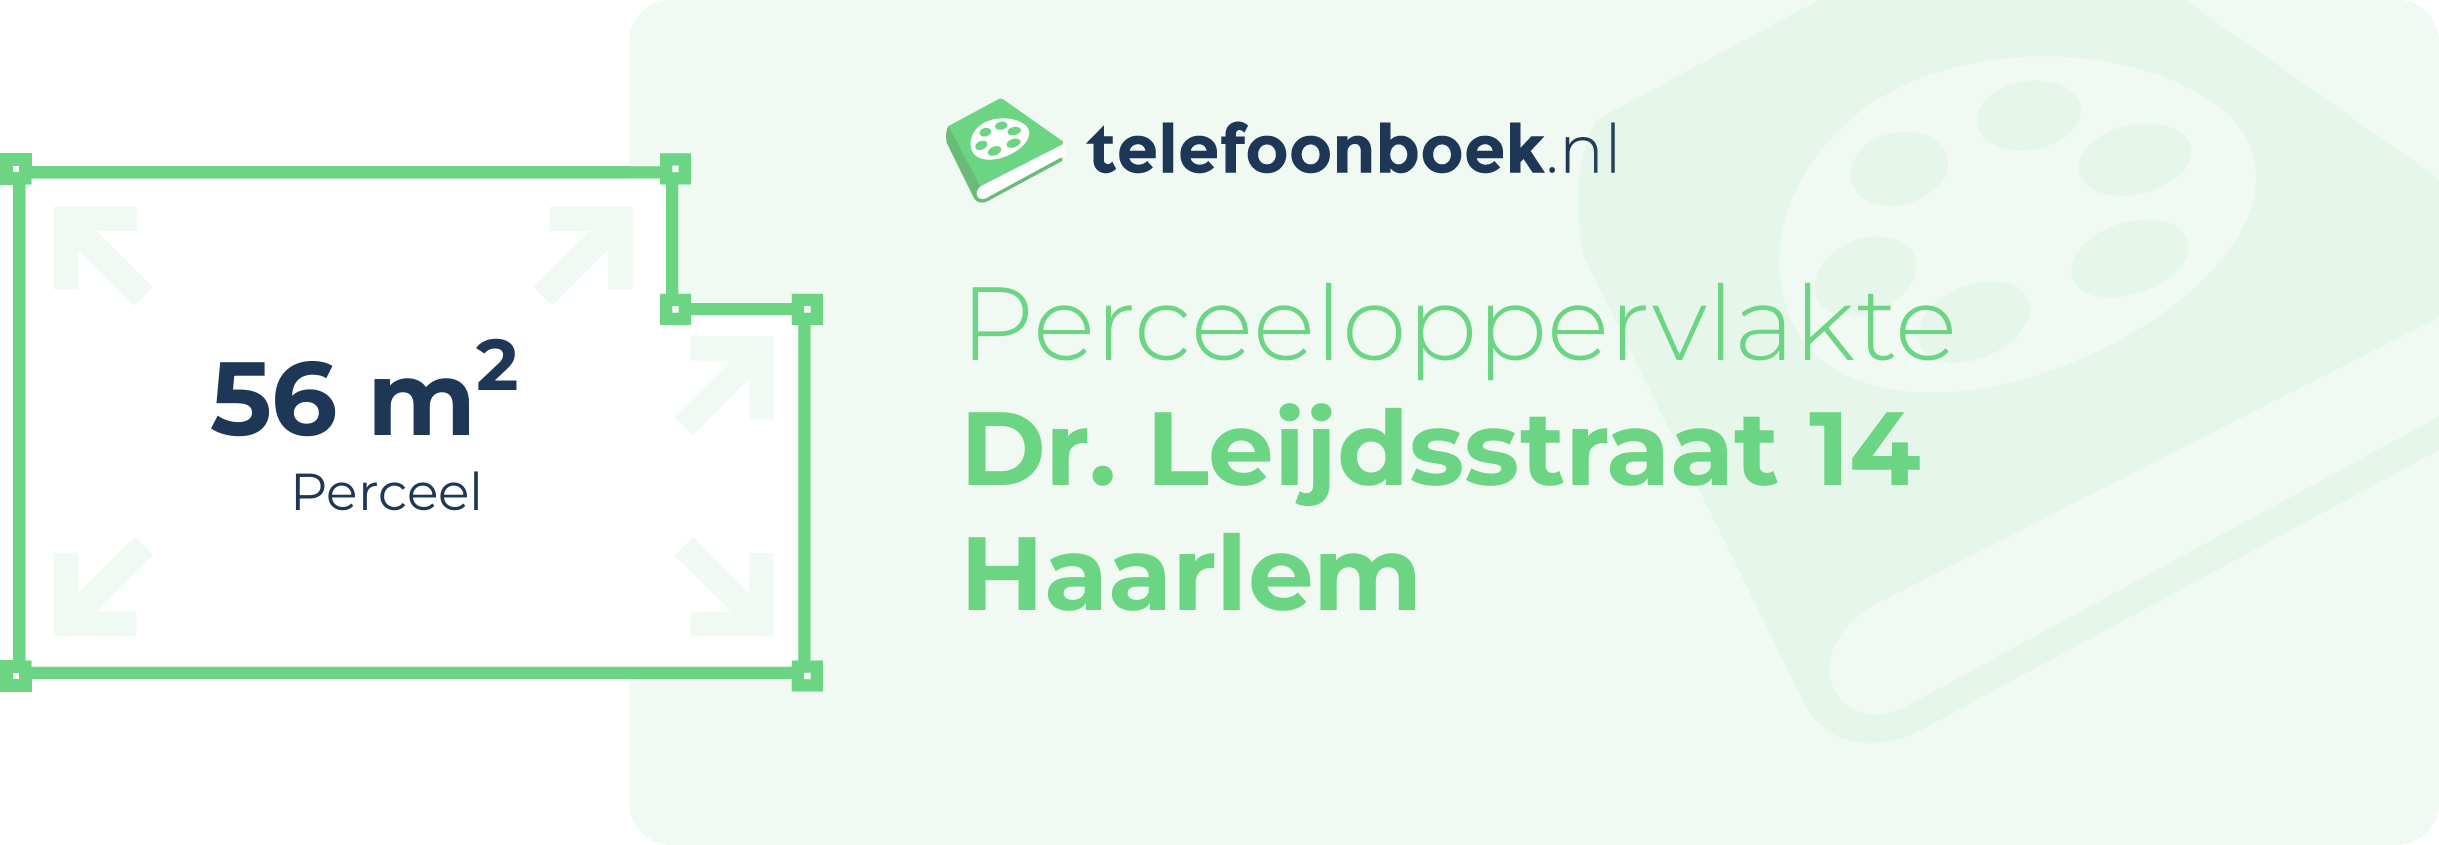 Perceeloppervlakte Dr. Leijdsstraat 14 Haarlem